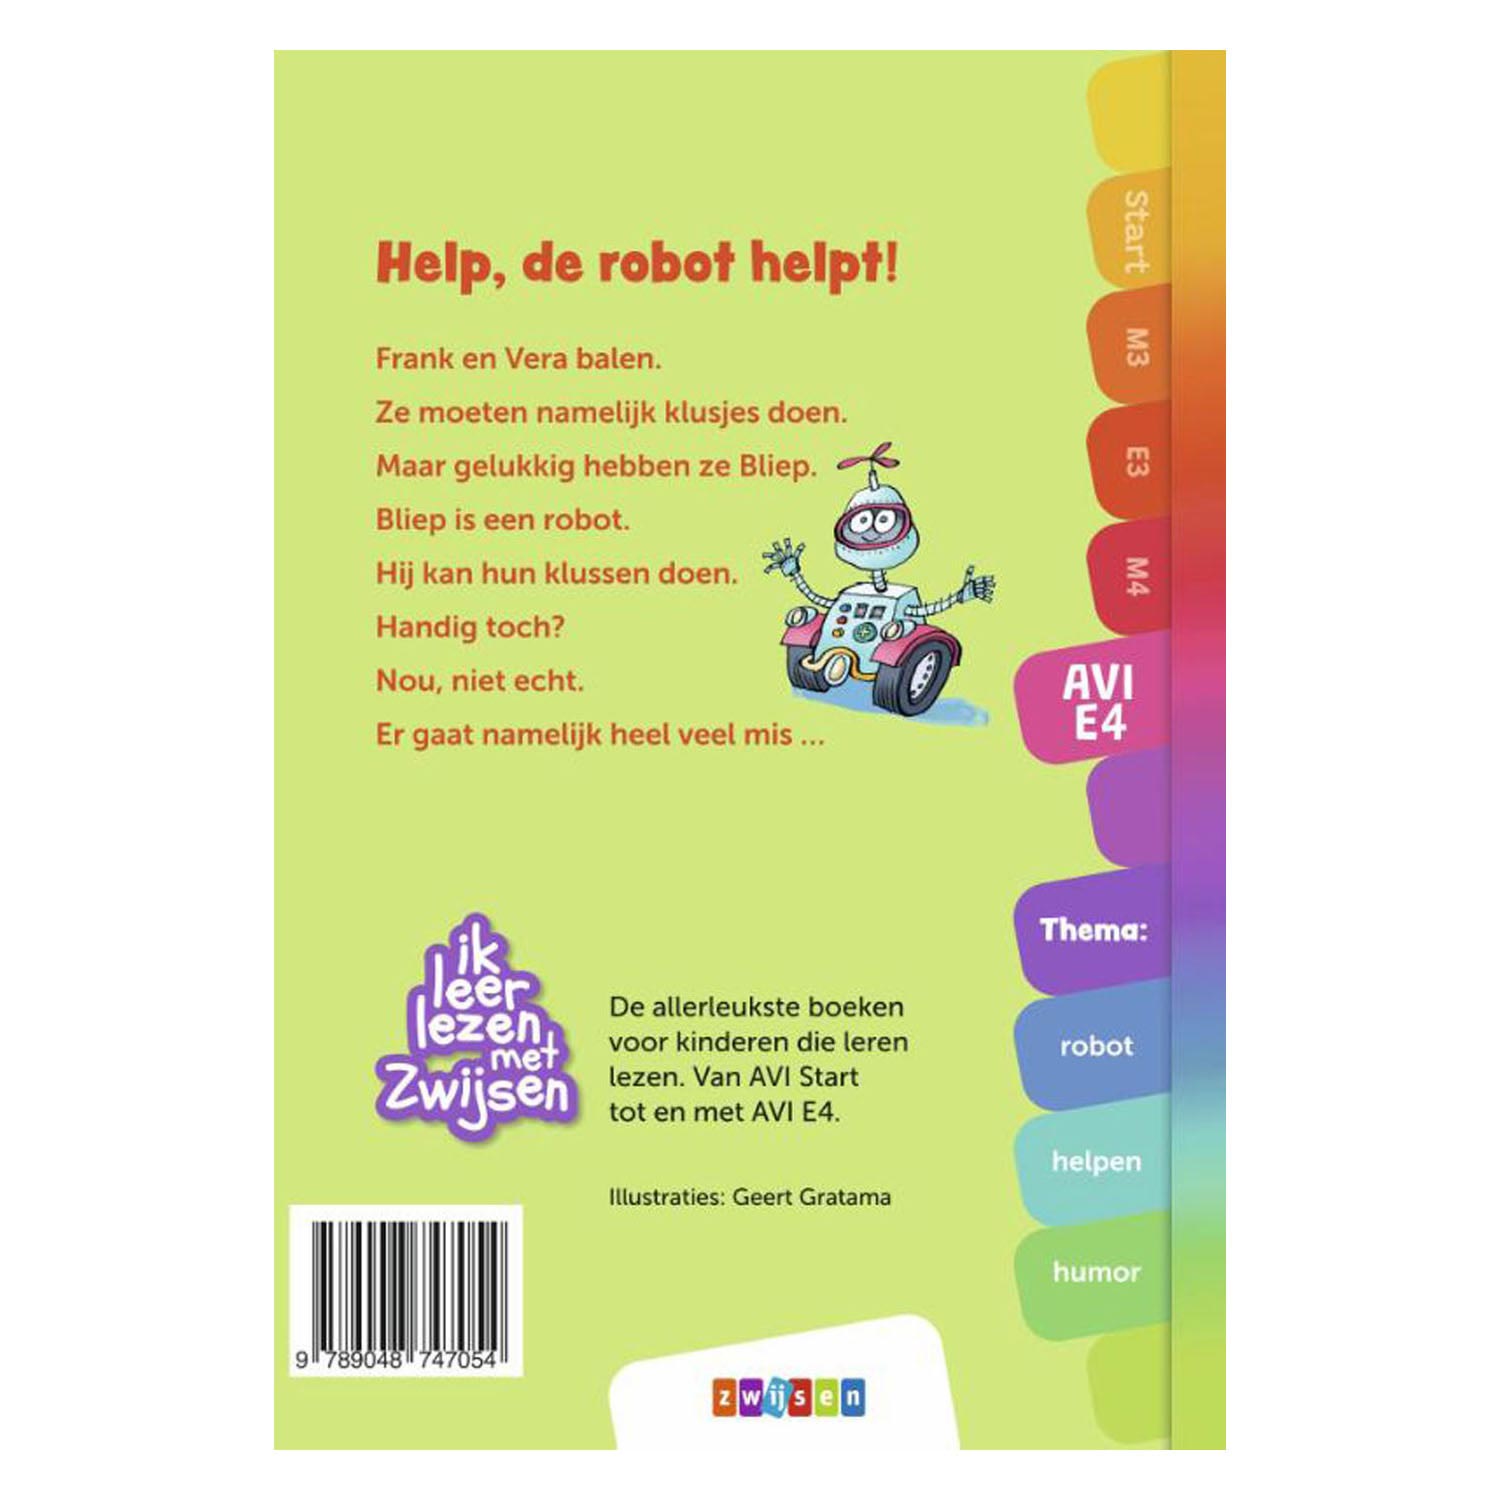 Ik leer lezen - Help, de robot helpt! (AVI-E4)